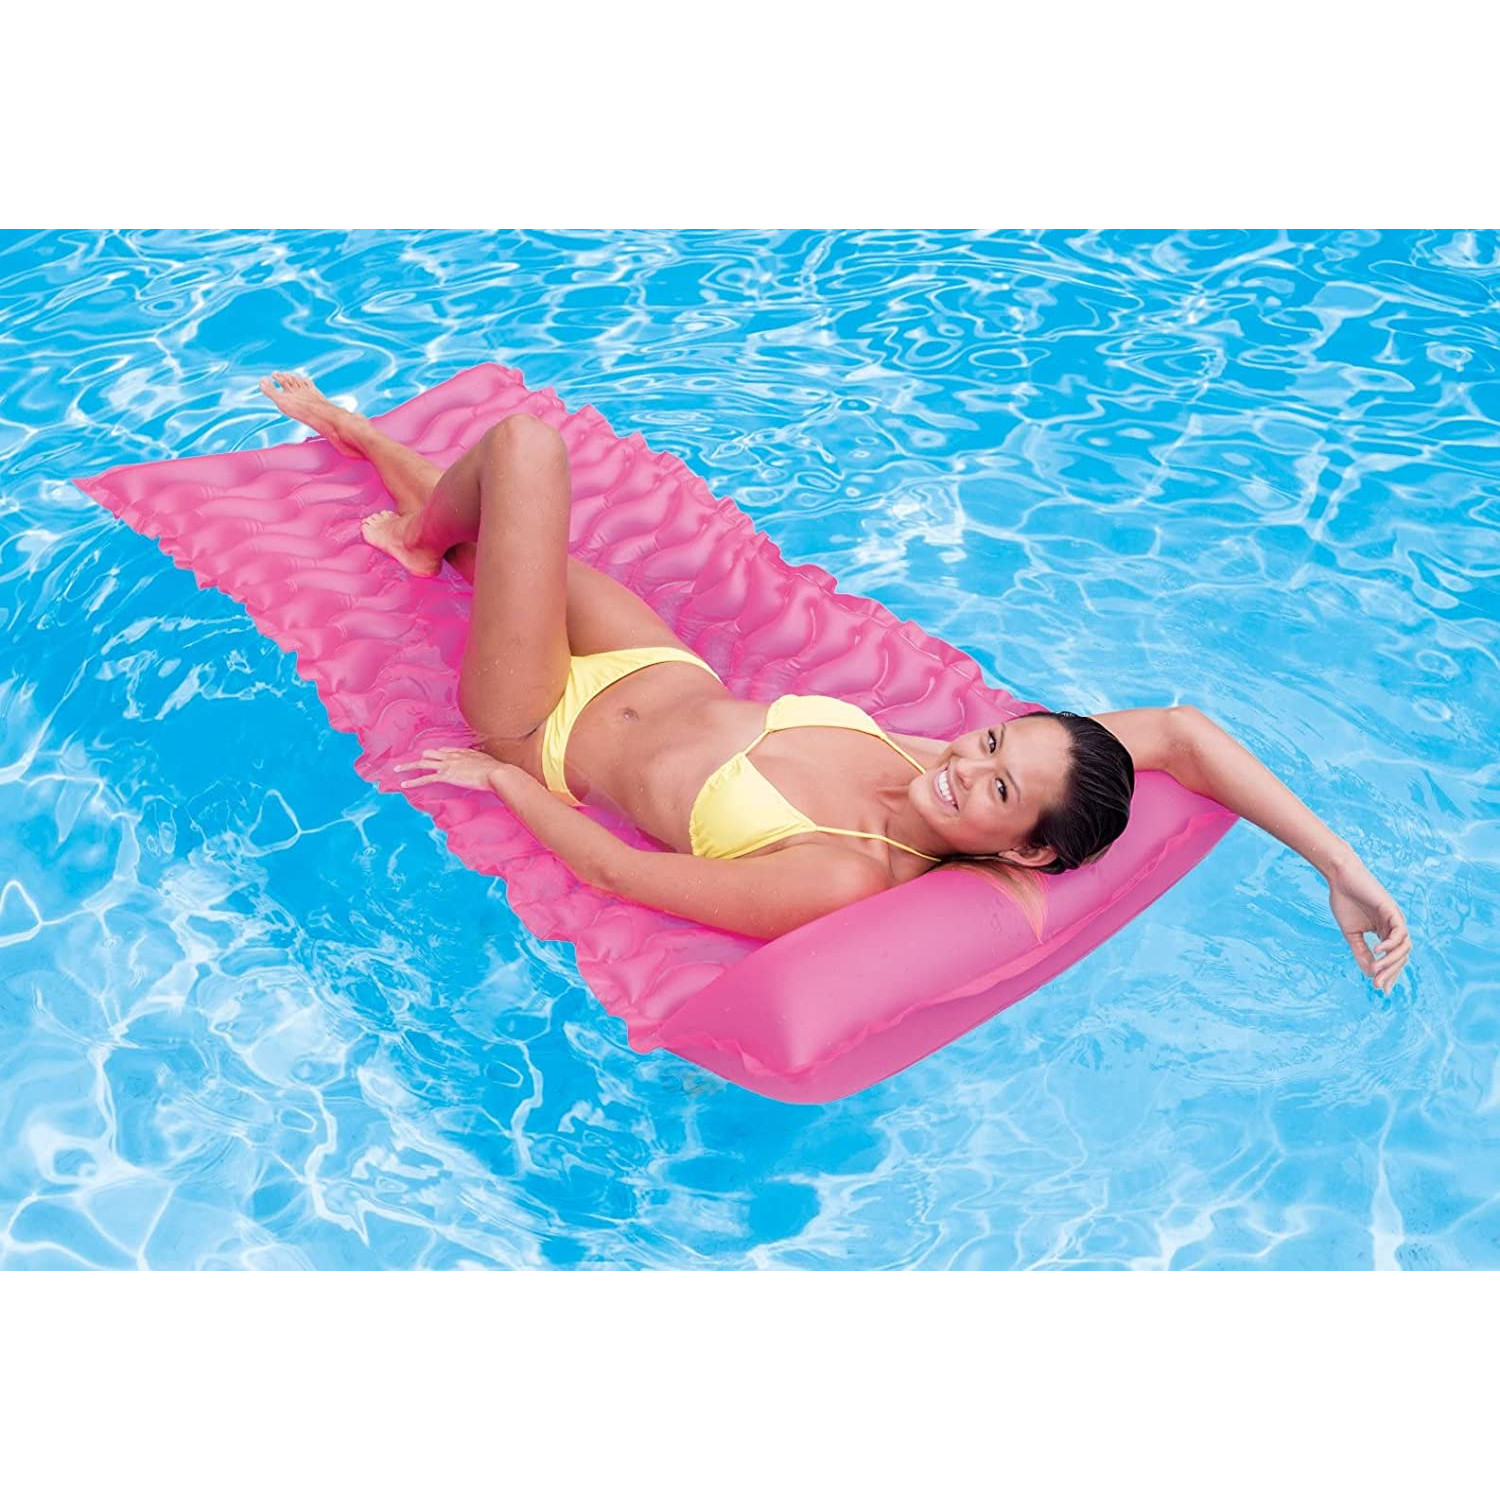 INTEX 58807EU - (zusammenrollbar, - pink Tote-n-Float Wasserspielzeug, 229x86cm) Luftmatratze